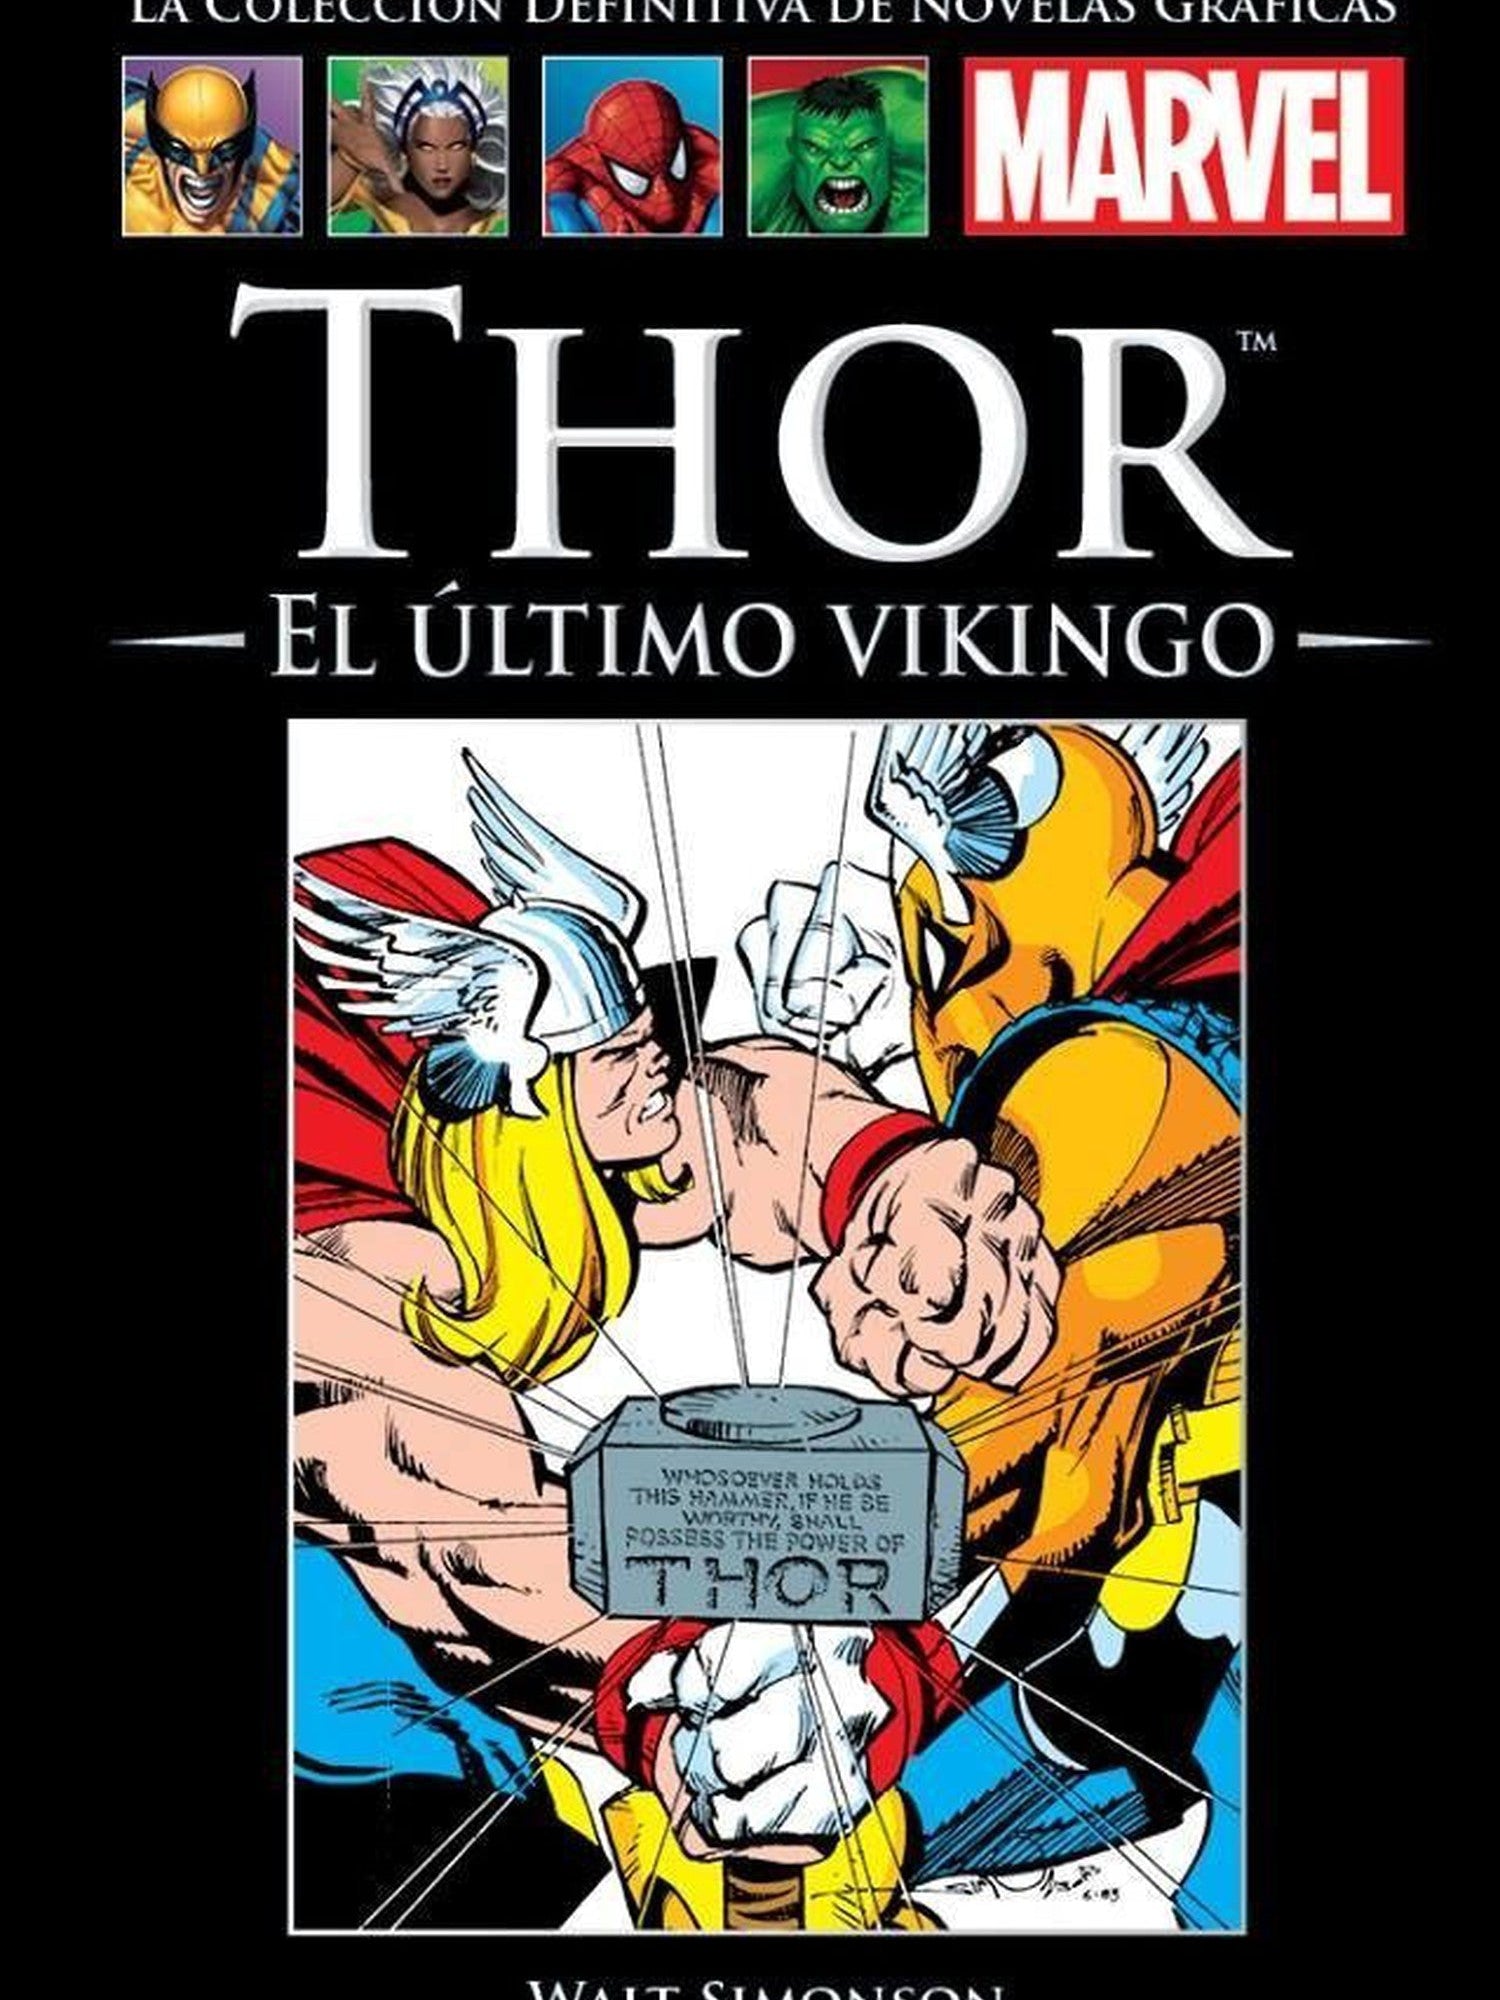 Thor - El Último Vikingo Salvat ENcuadrocomics